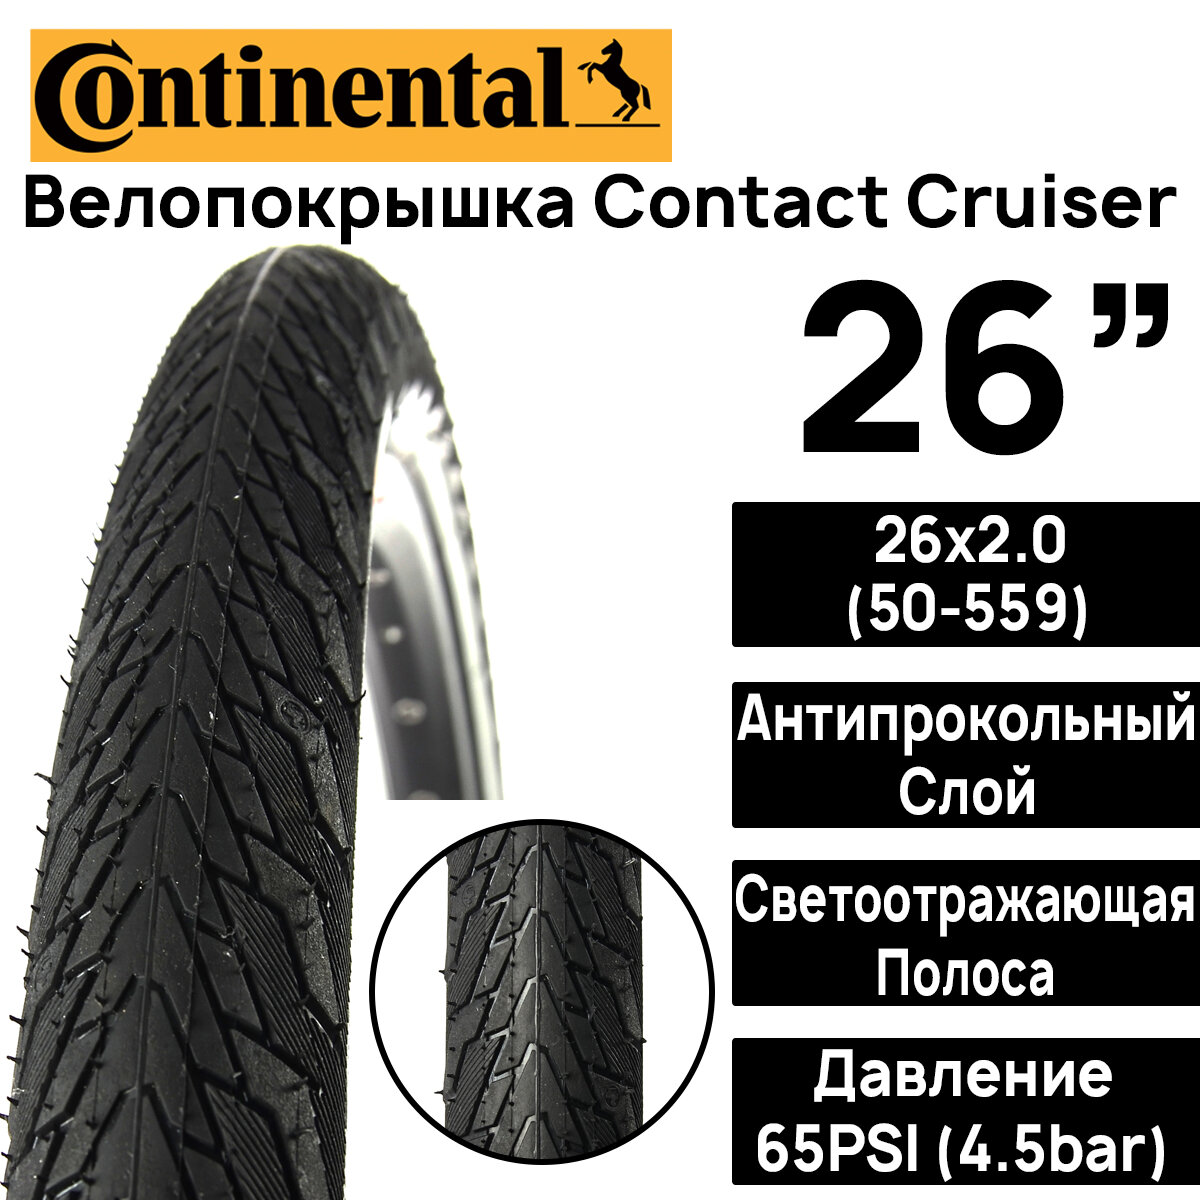 Покрышка для велосипеда Continental Contact Cruiser 26"x2.0 (50-559) MAX BAR 4.5 PSI 65 жесткий корд антипрокольный слой черная